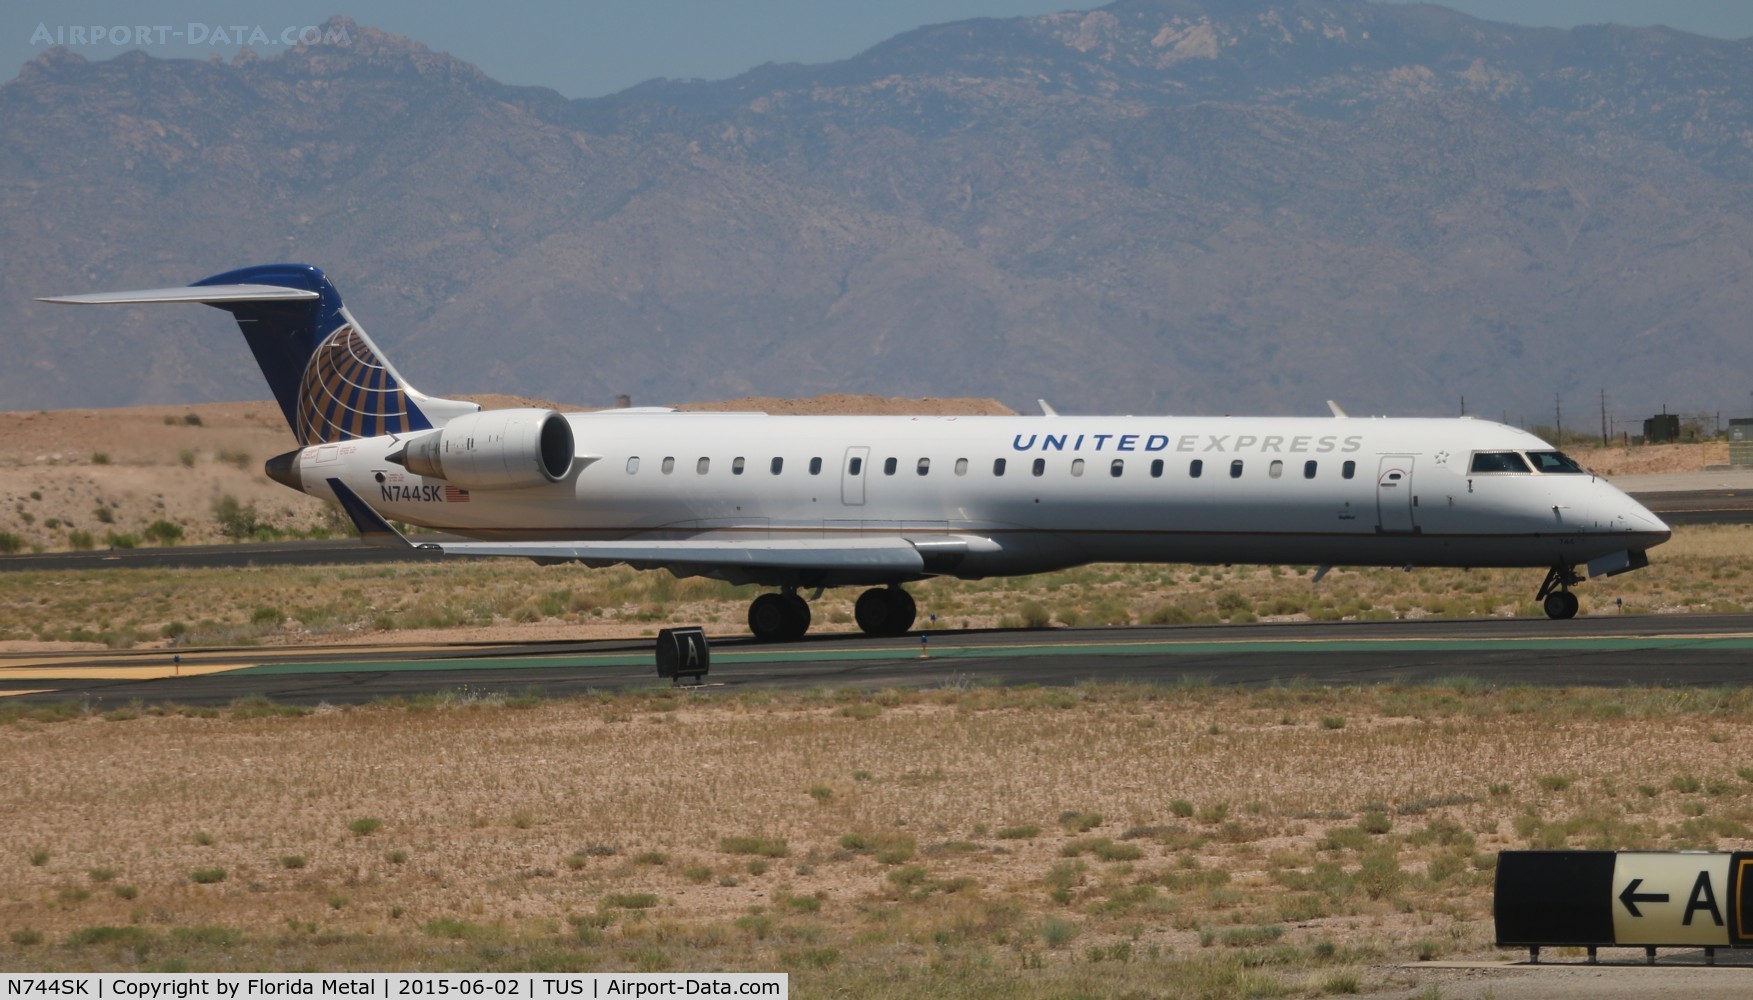 N744SK, 2005 Bombardier CRJ-701 (CL-600-2C10) Regional Jet C/N 10200, United Express